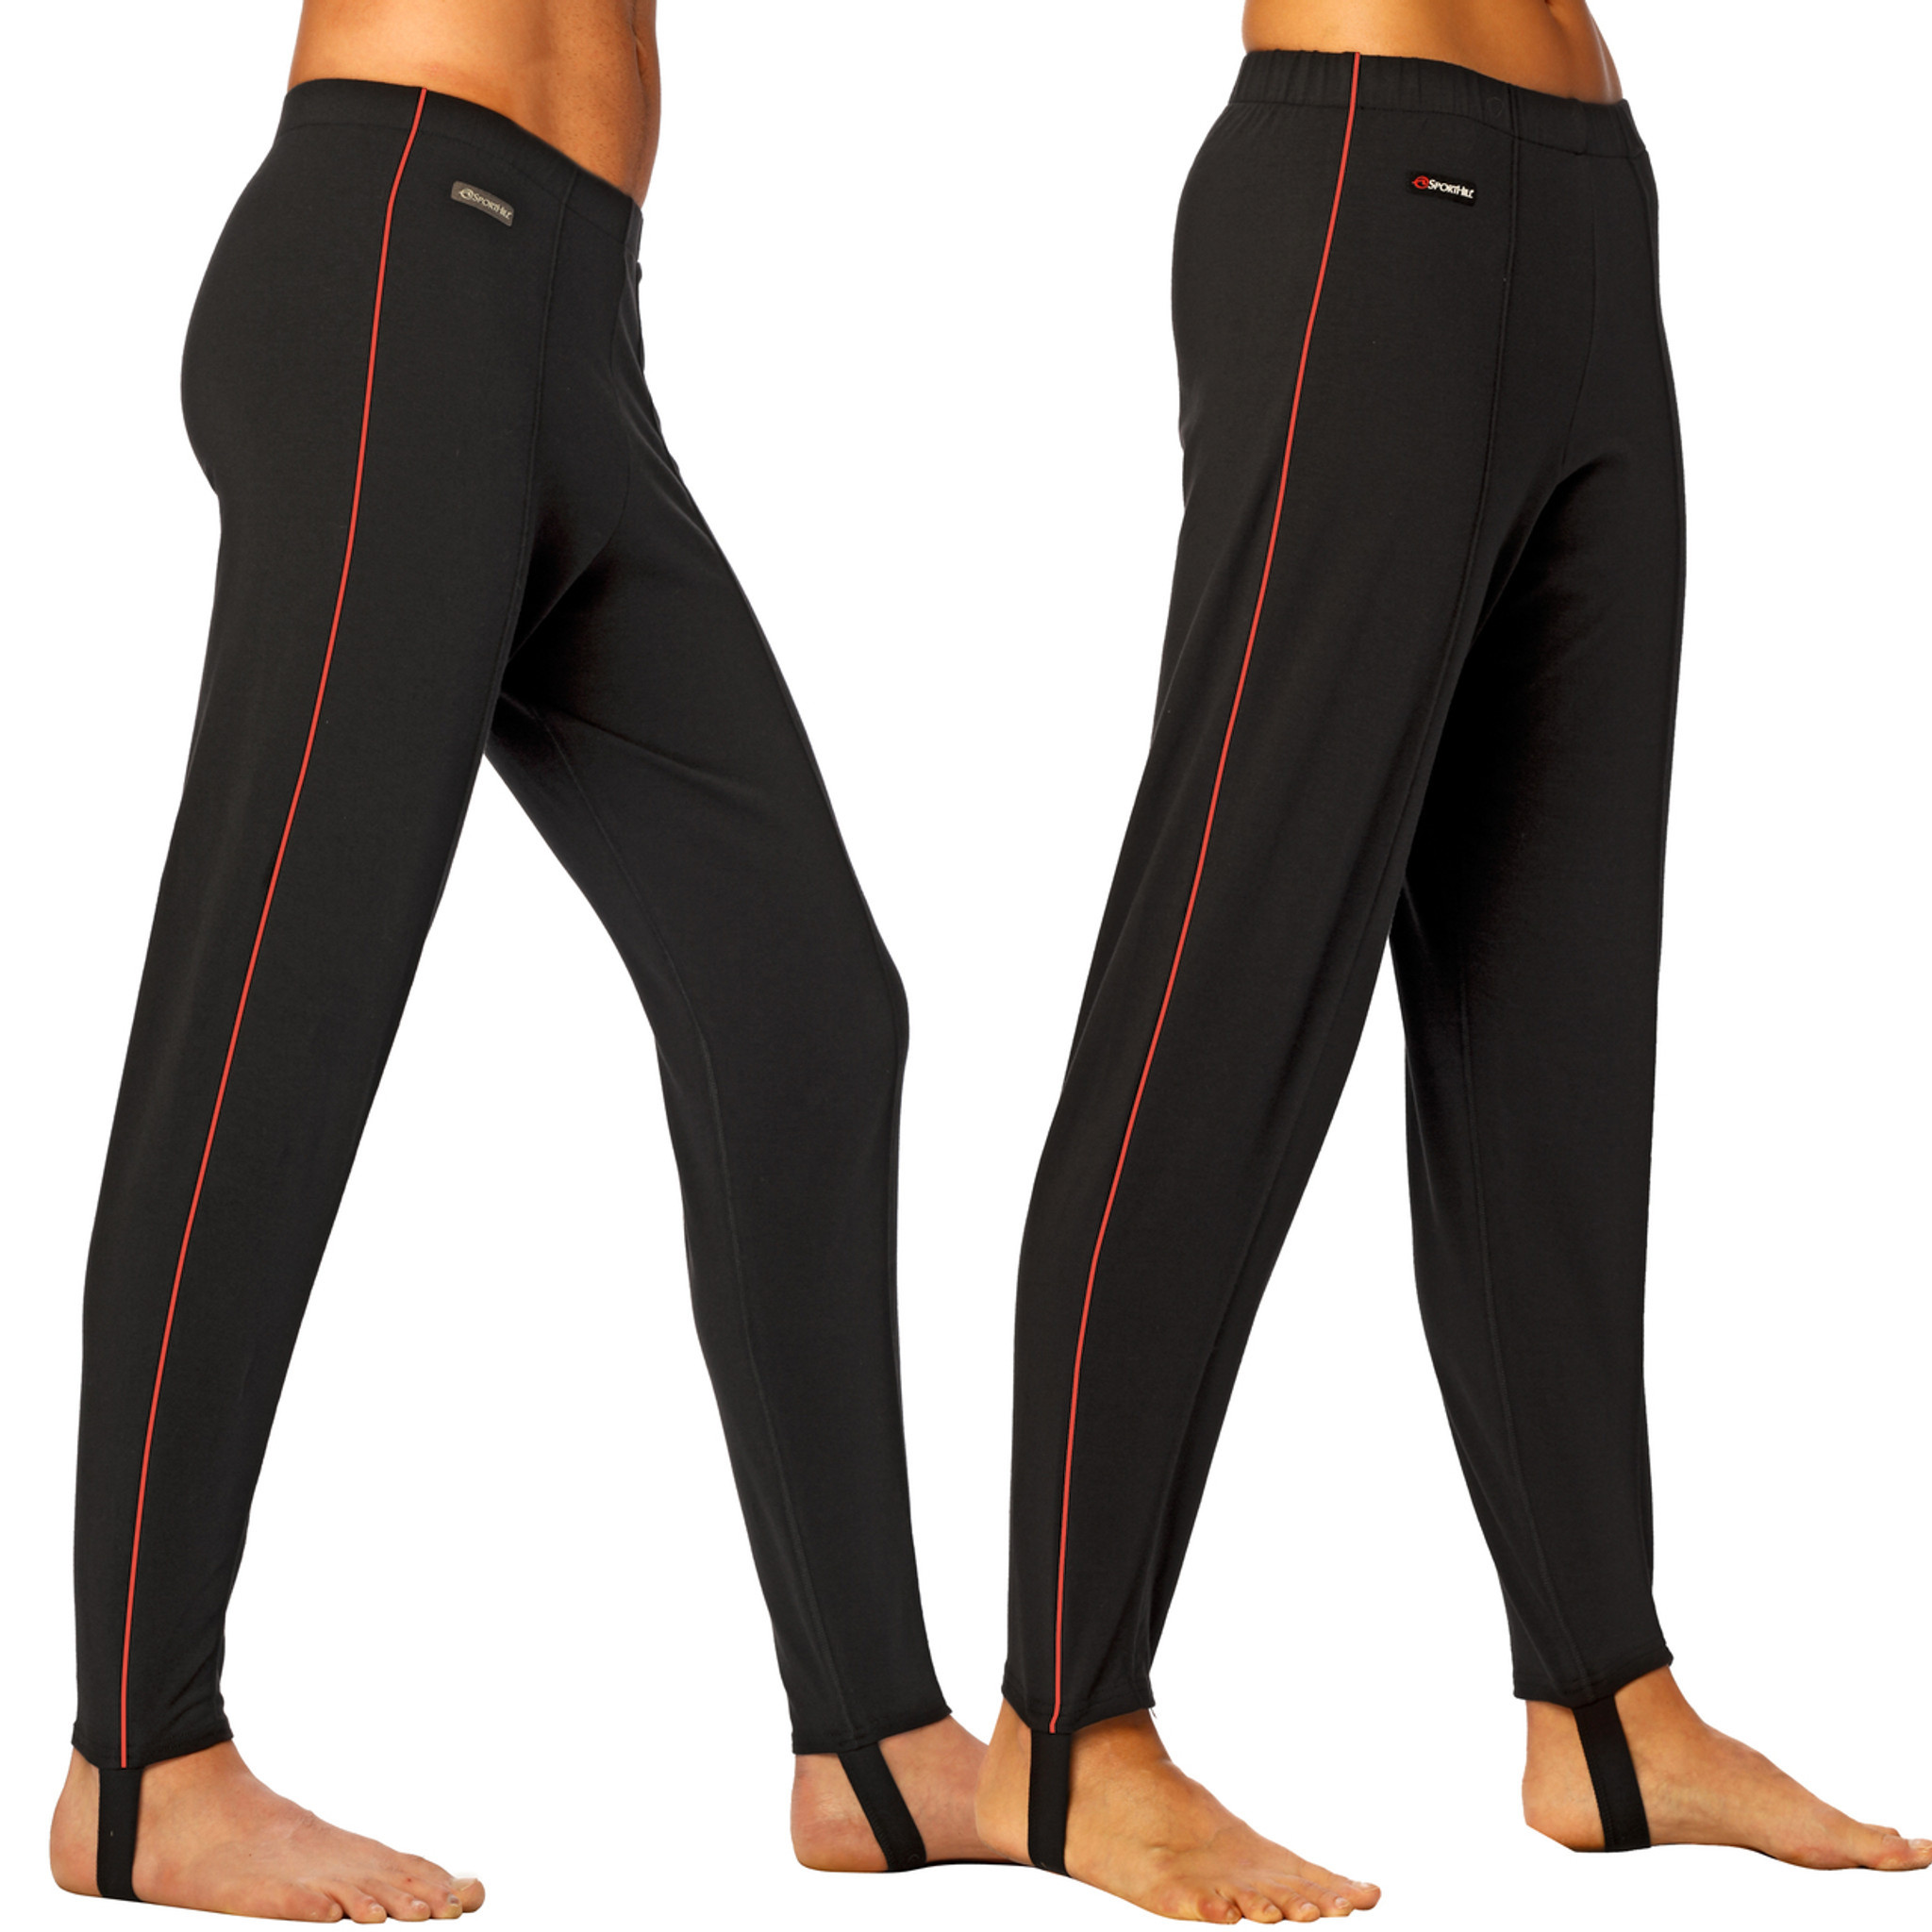 Yoga Stirrup Pants – FOAT